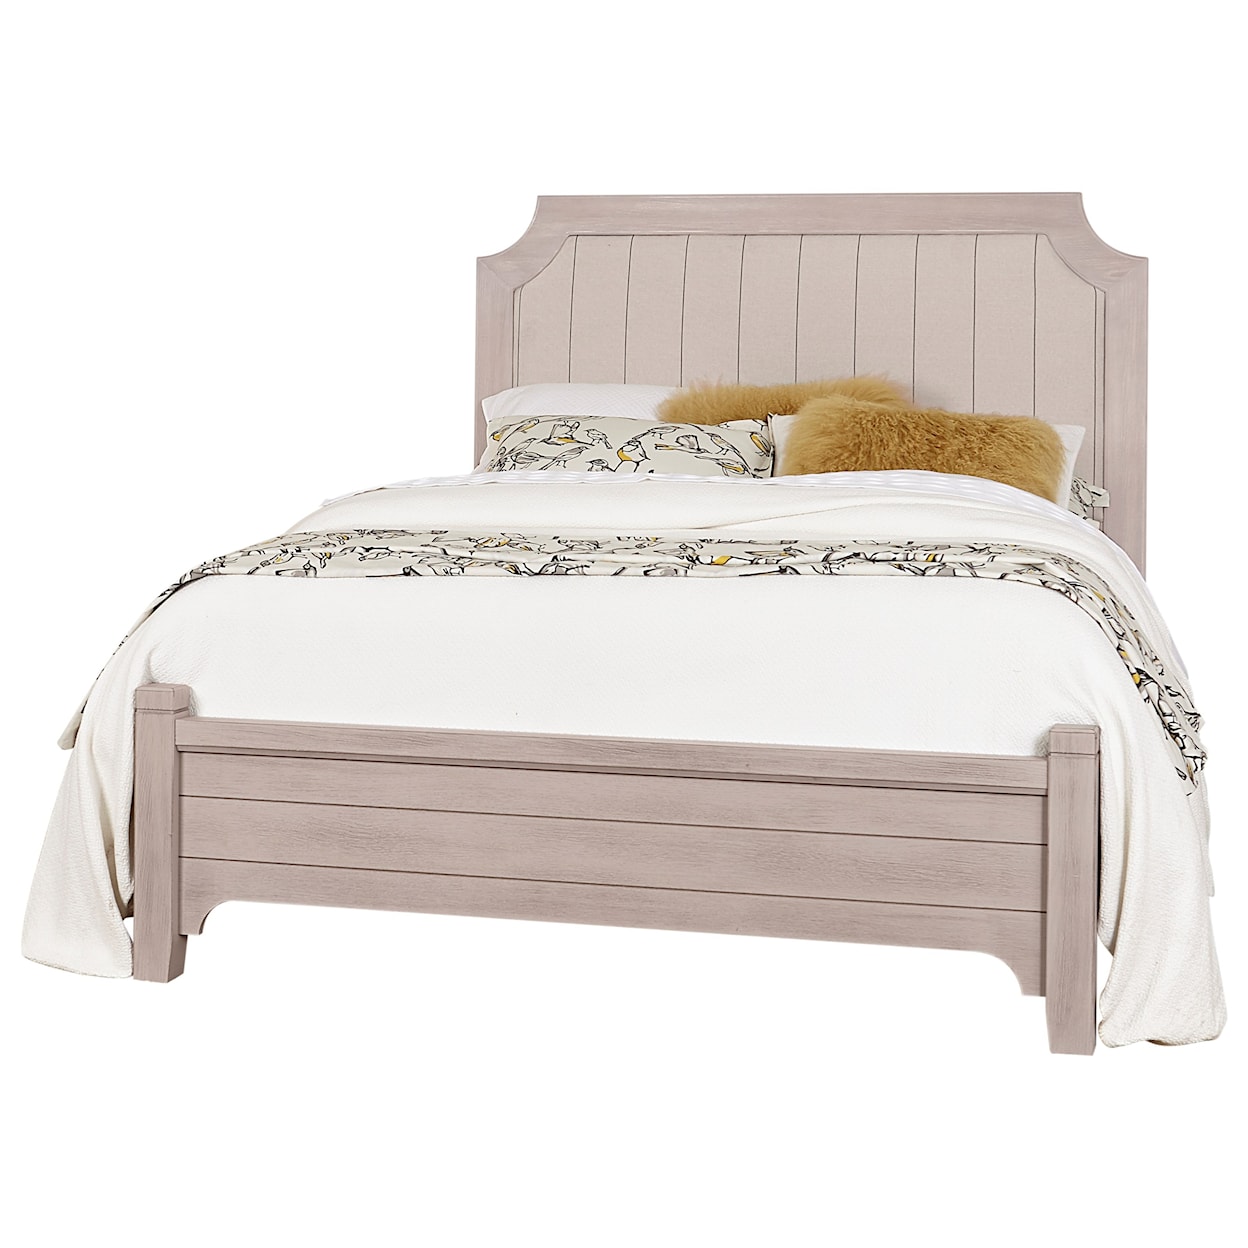 Laurel Mercantile Co. Bungalow Queen Upholstered Bed